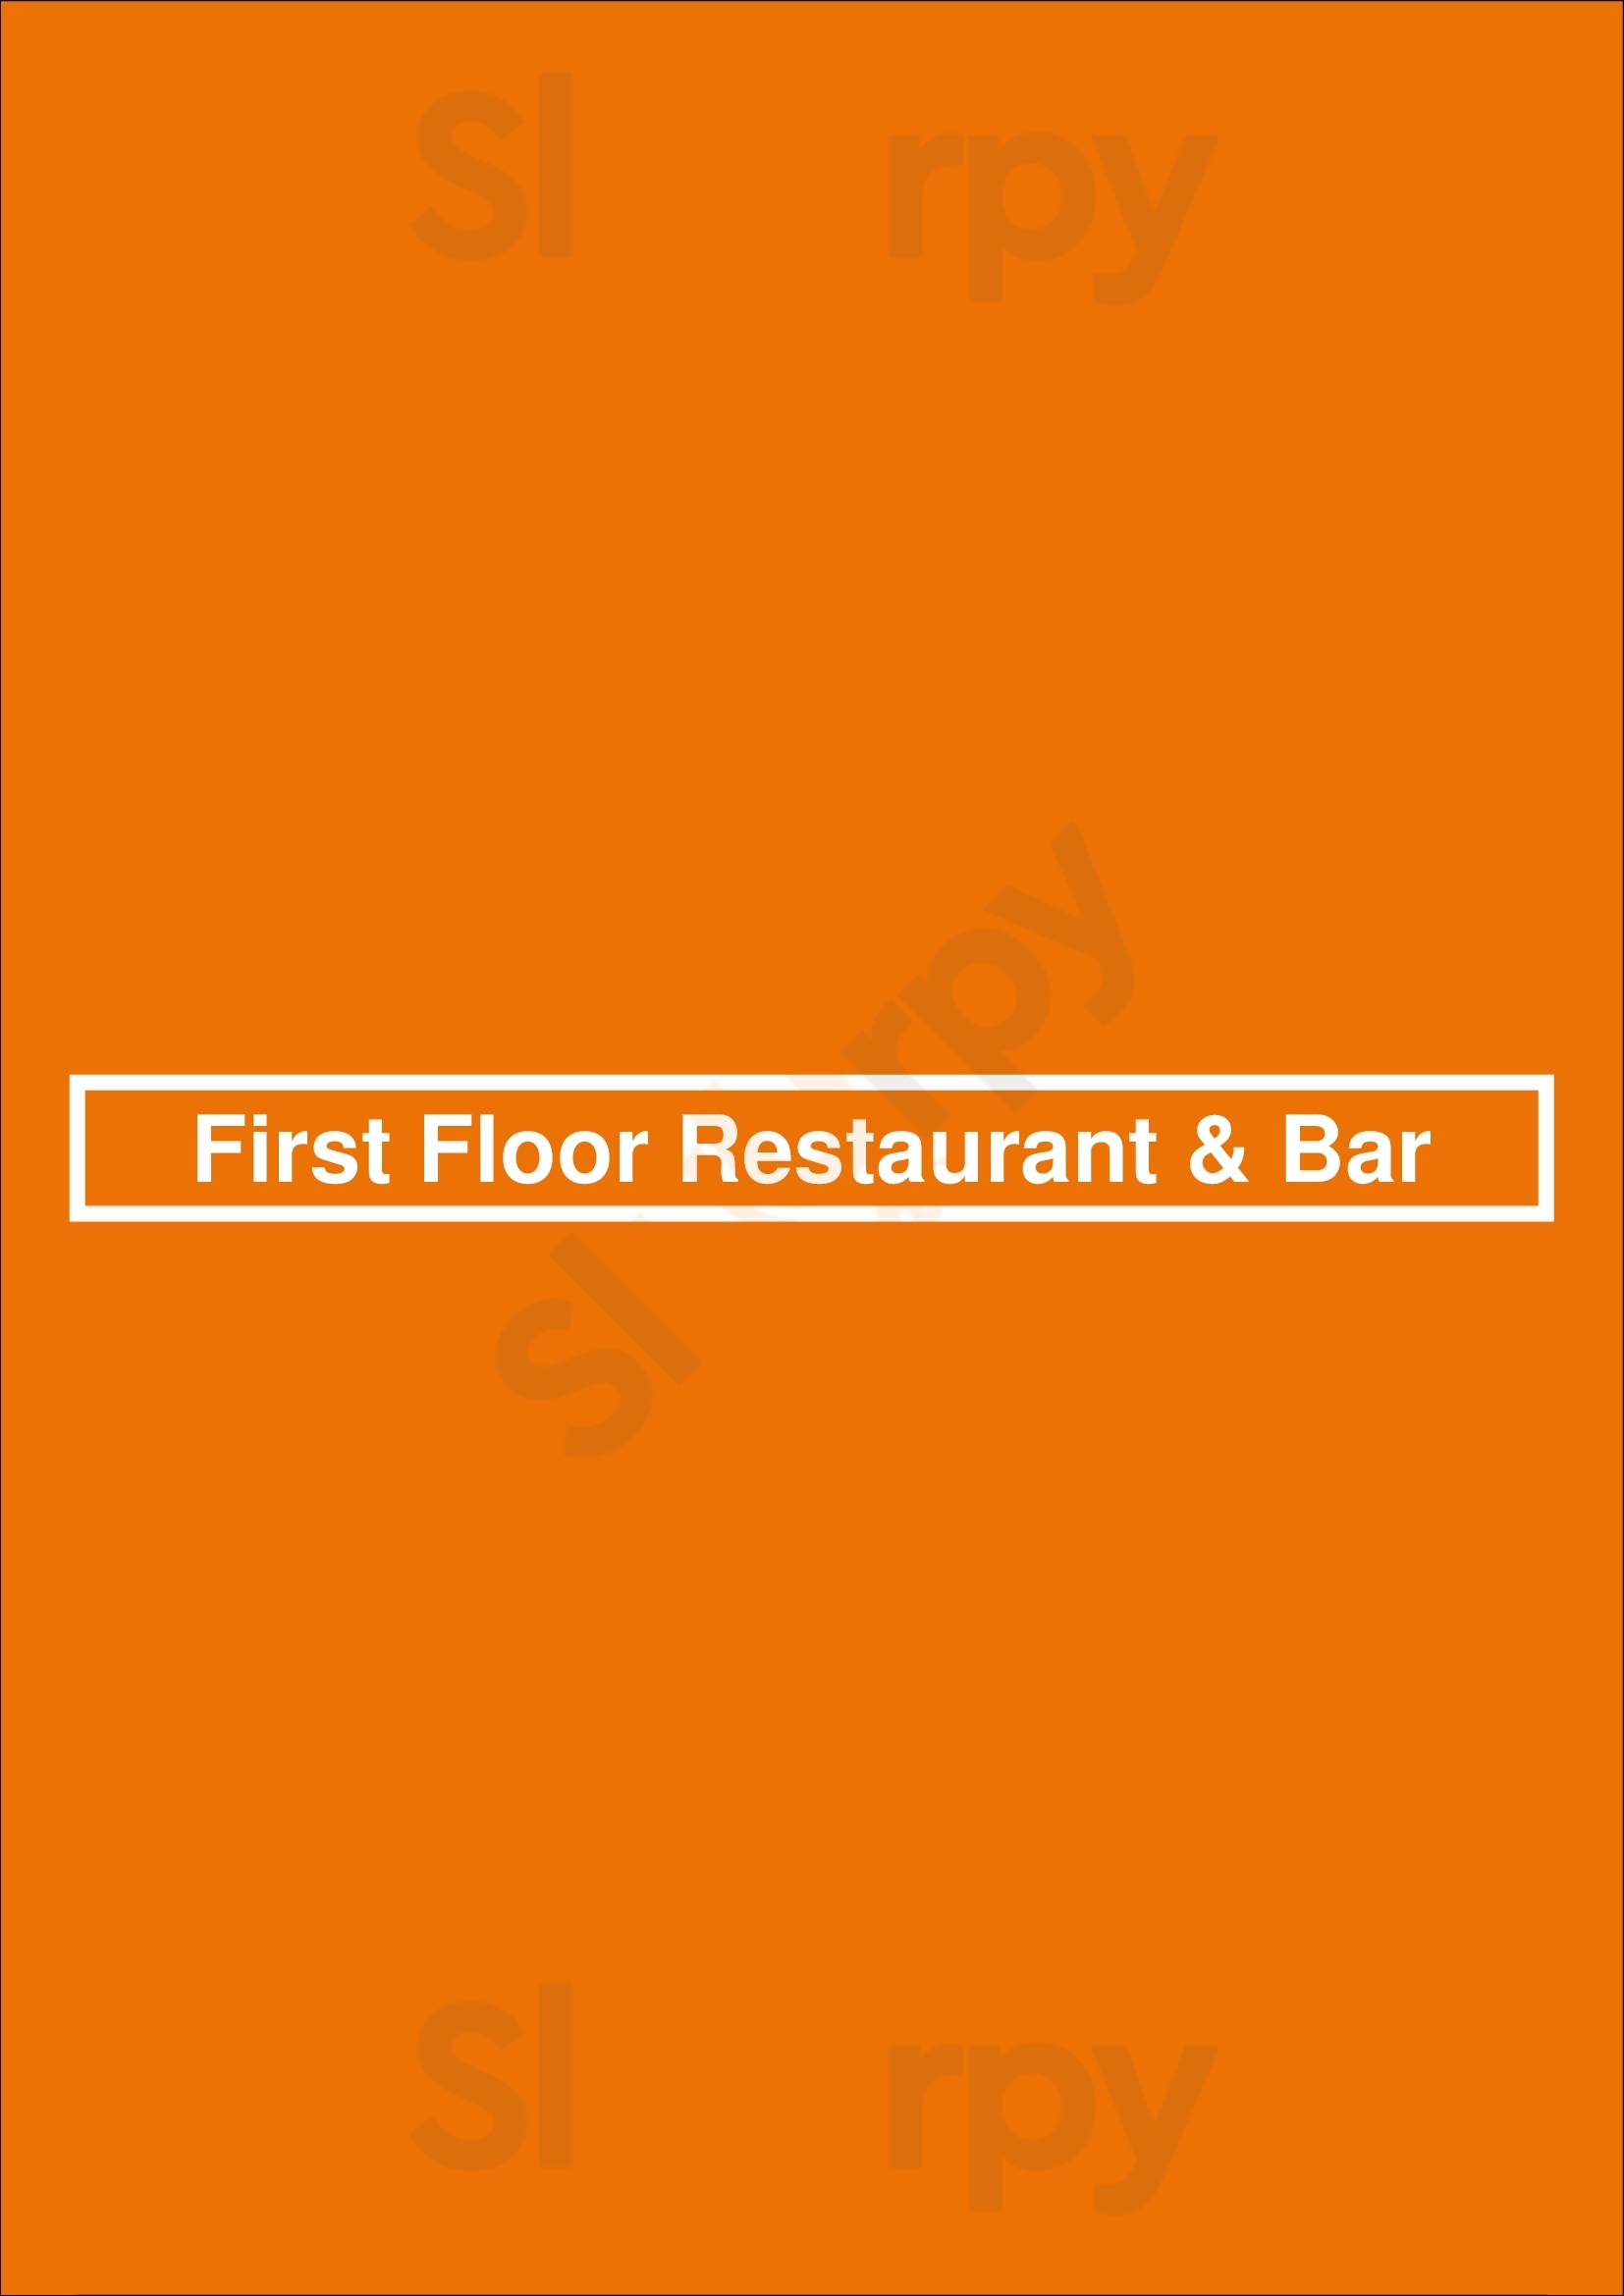 First Floor Restaurant & Bar Dublin Menu - 1